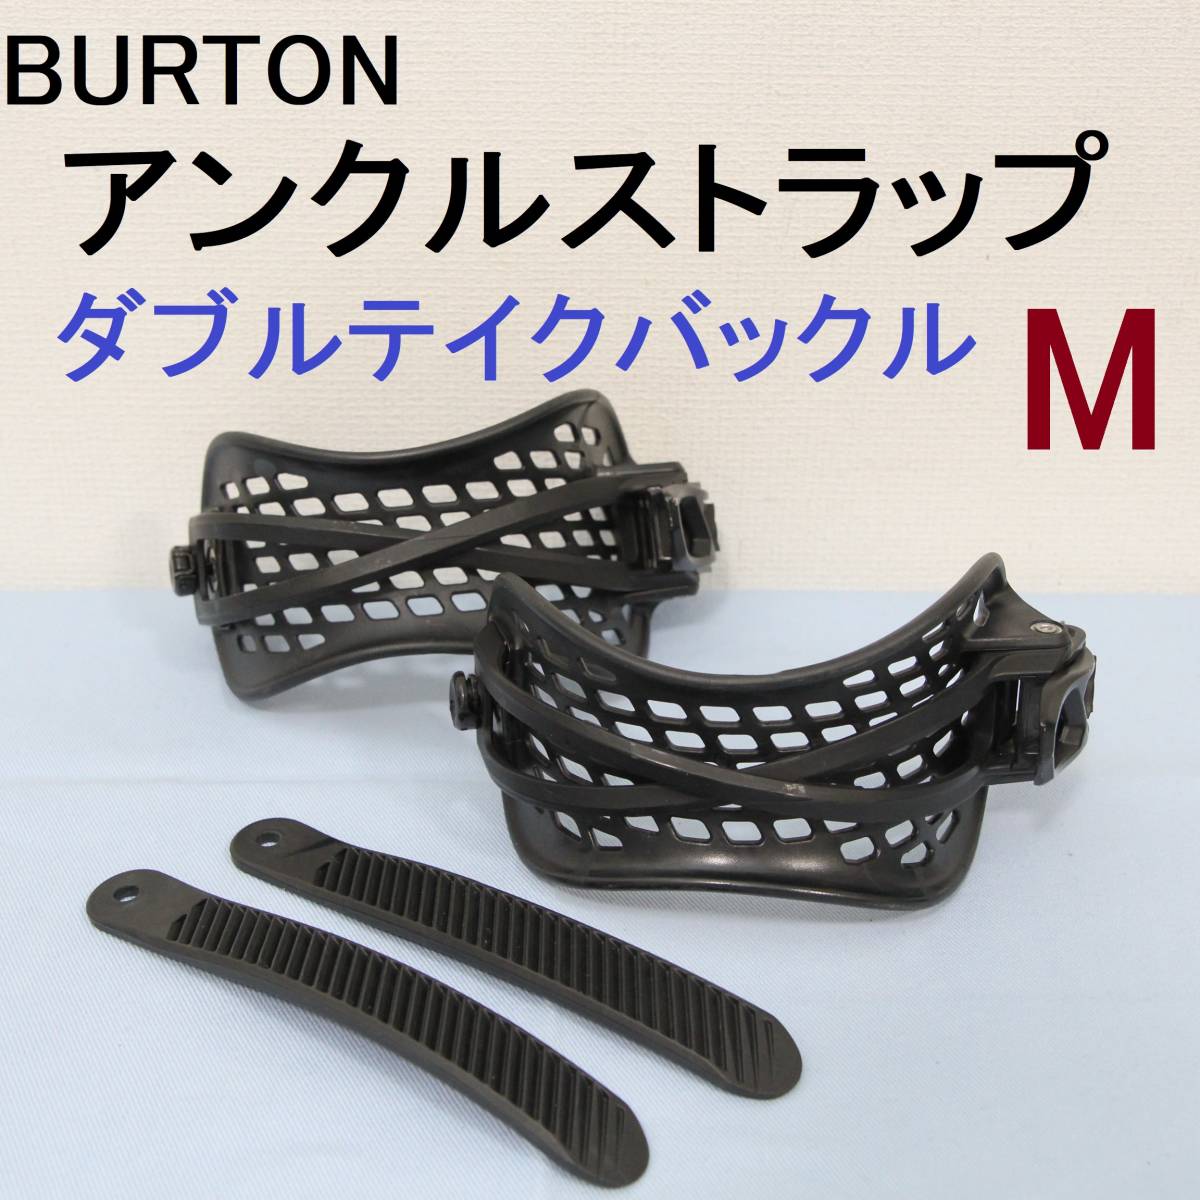 公式通販にて購入 BURTON バインディングパーツ ダブルテイク アンクル